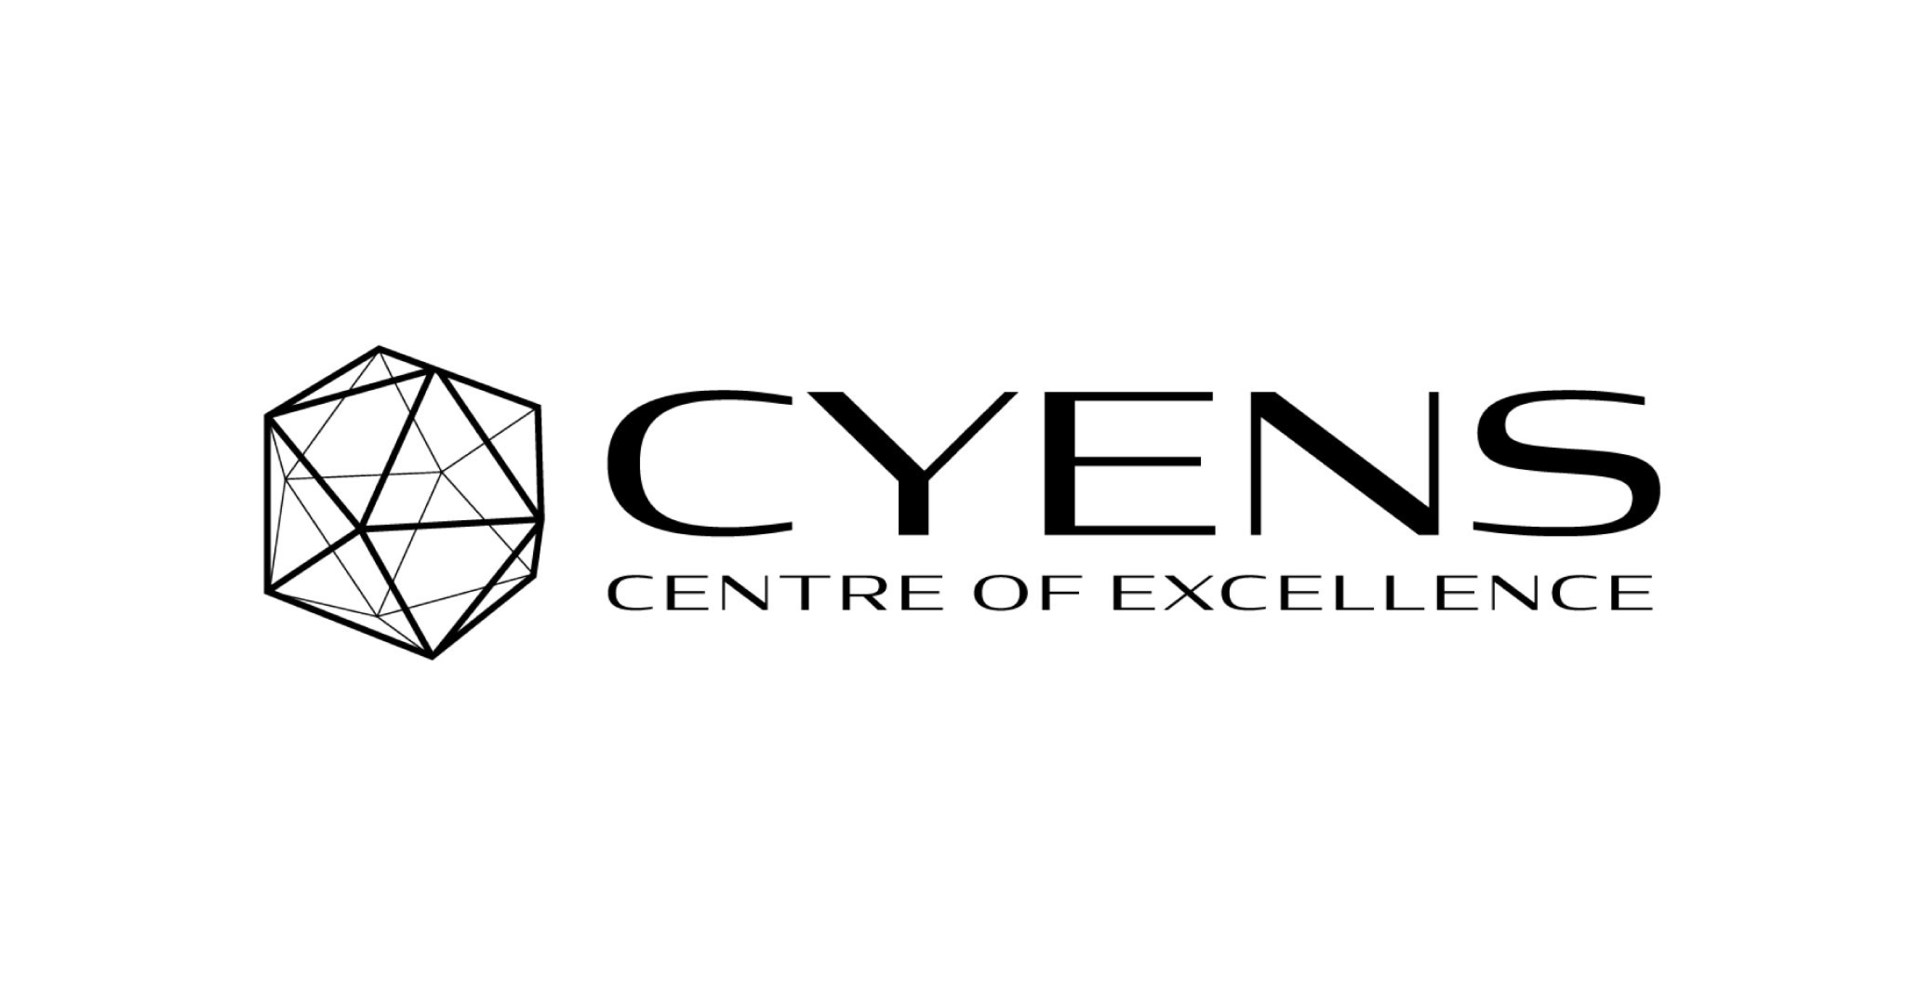 Das CYENS Centre of Excellence und Wire Services Ltd gaben heute bekannt, dass die Unternehmen eine Kooperationsvereinbarung zur Entwicklung digitaler Zwillinge für den Immobilienmarkt in Zypern und Griechenland geschlossen haben